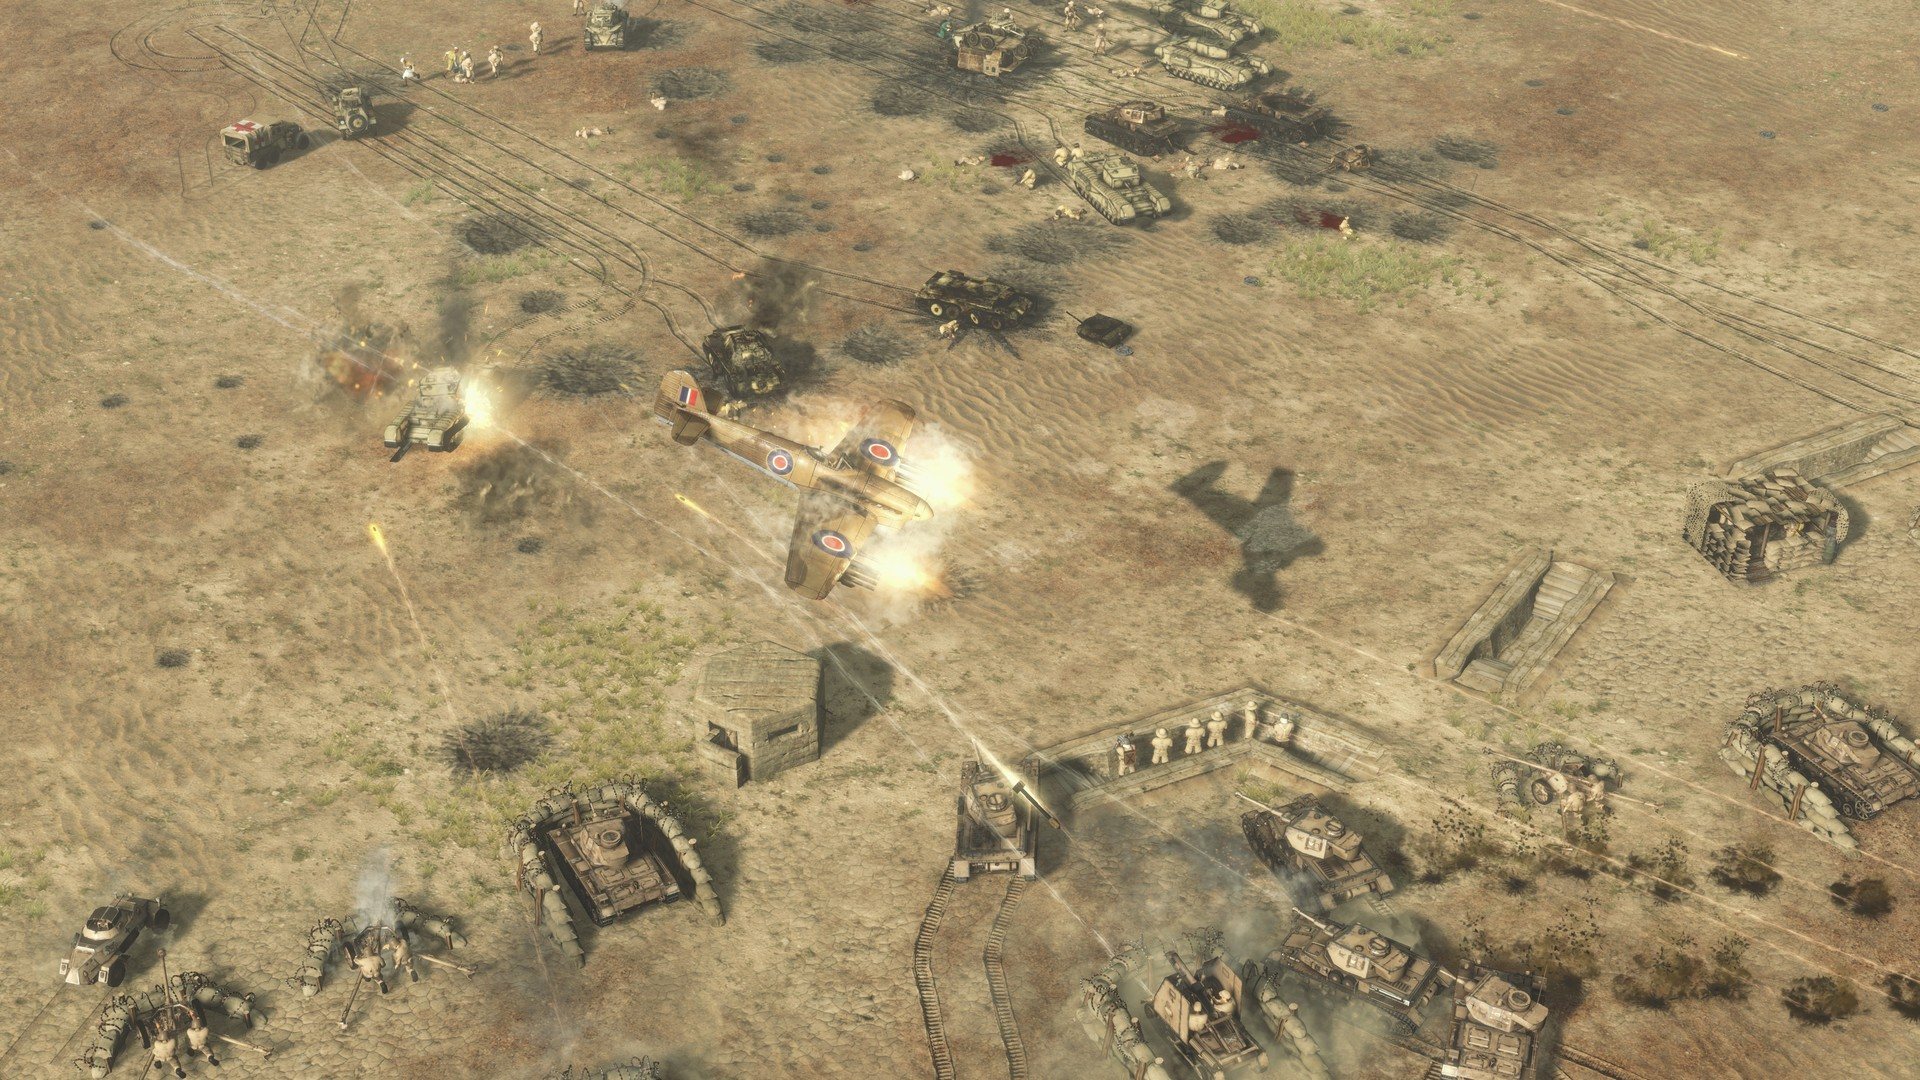 Sudden Strike 4 - Africa: Desert War DLC Steam CD Key, $1.8